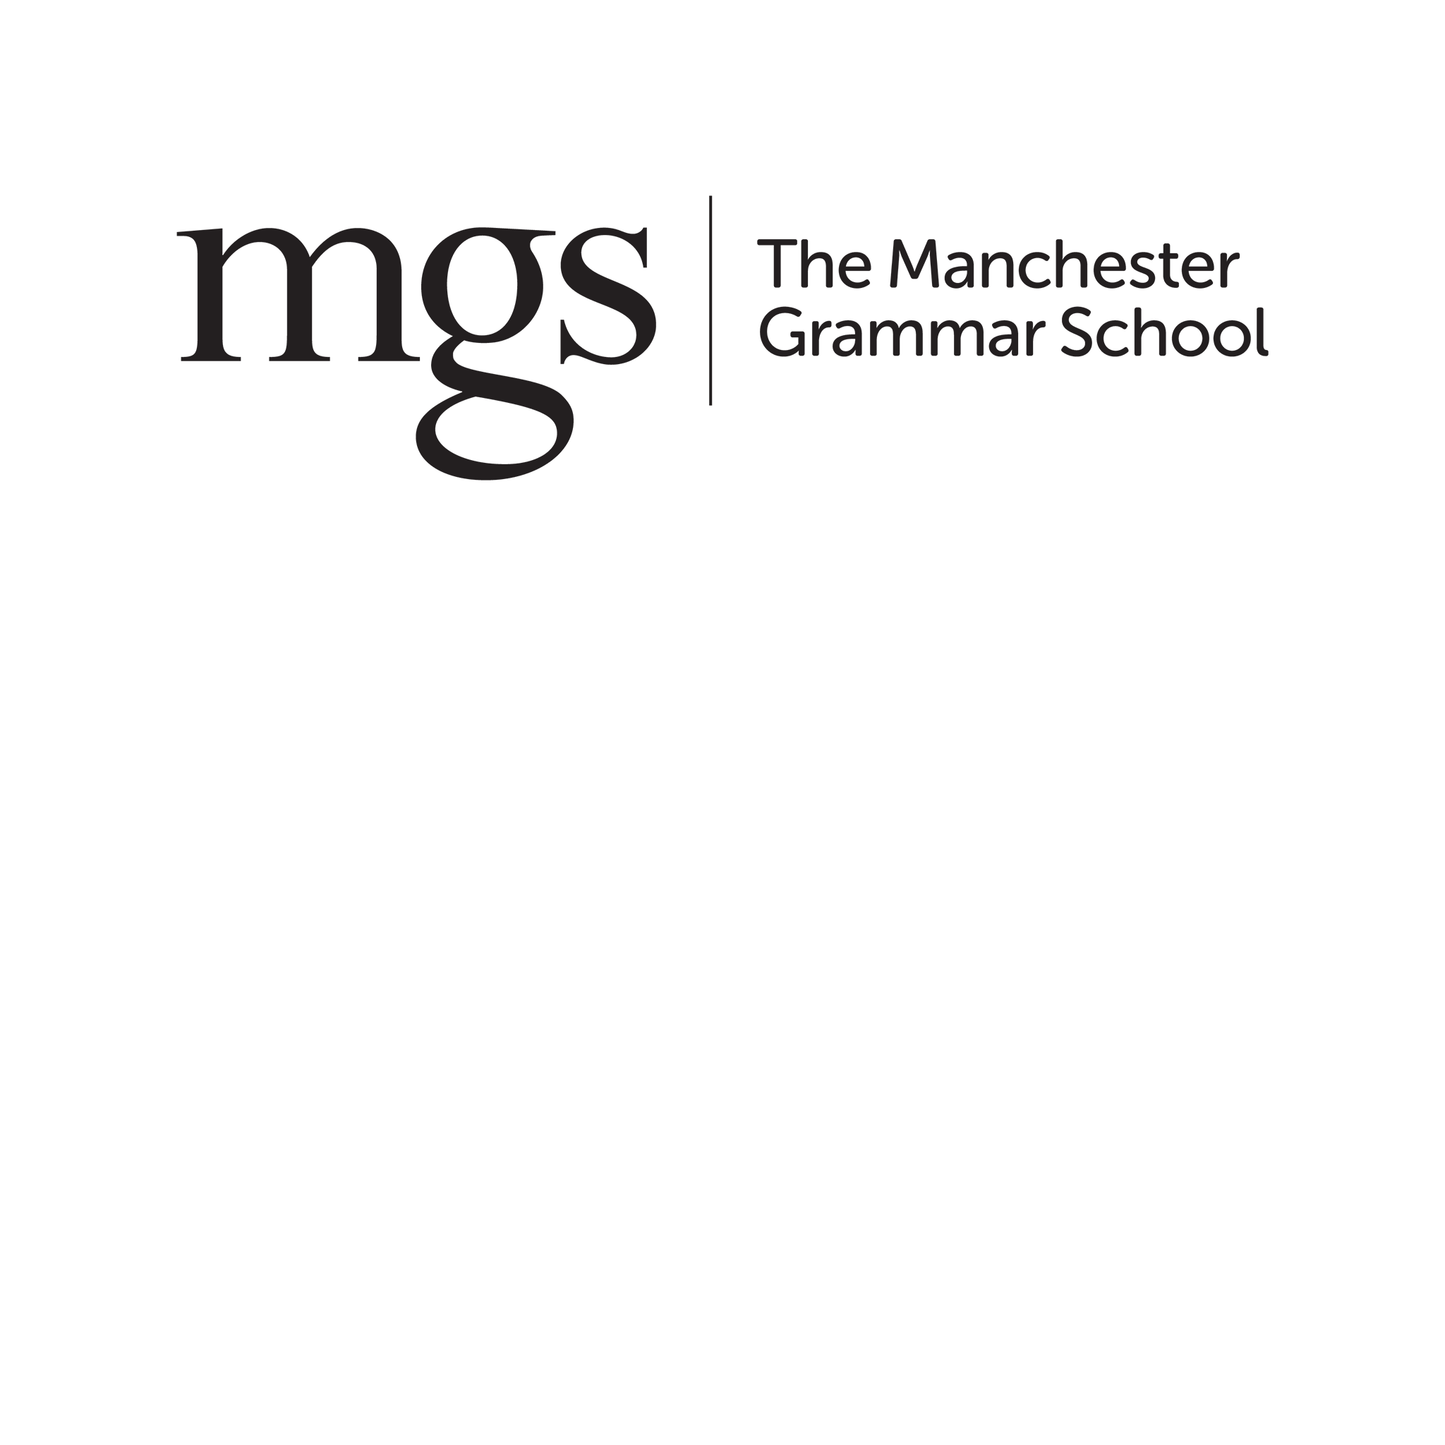 The Manchester Grammar School: 11+ Maths (2010) [257]